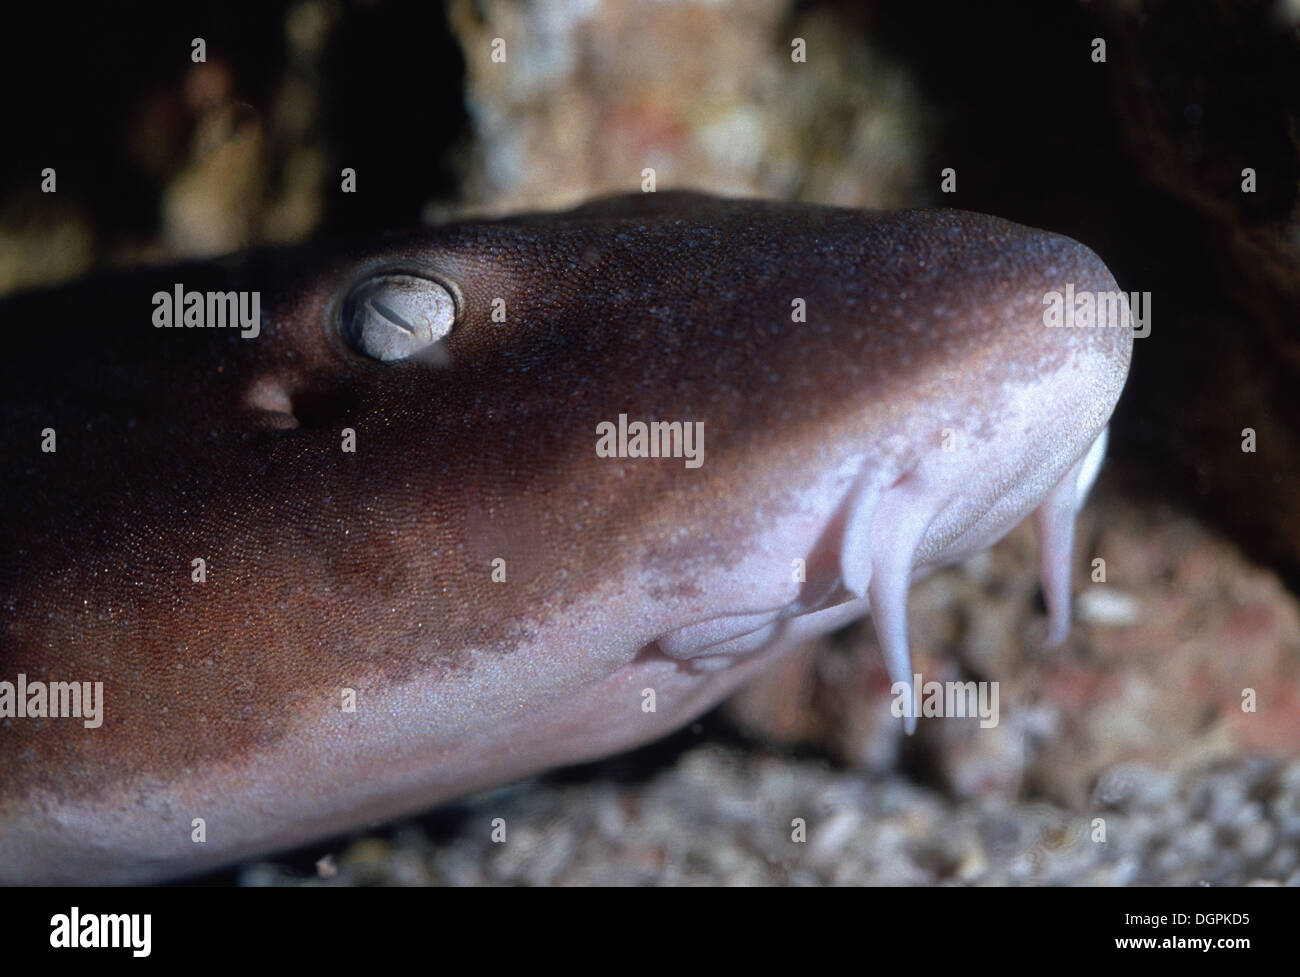 Brownbanded bamboo shark, Chiloscyllium punctatum, Hemiscylliidae, Indo-pacific Ocean Stock Photo